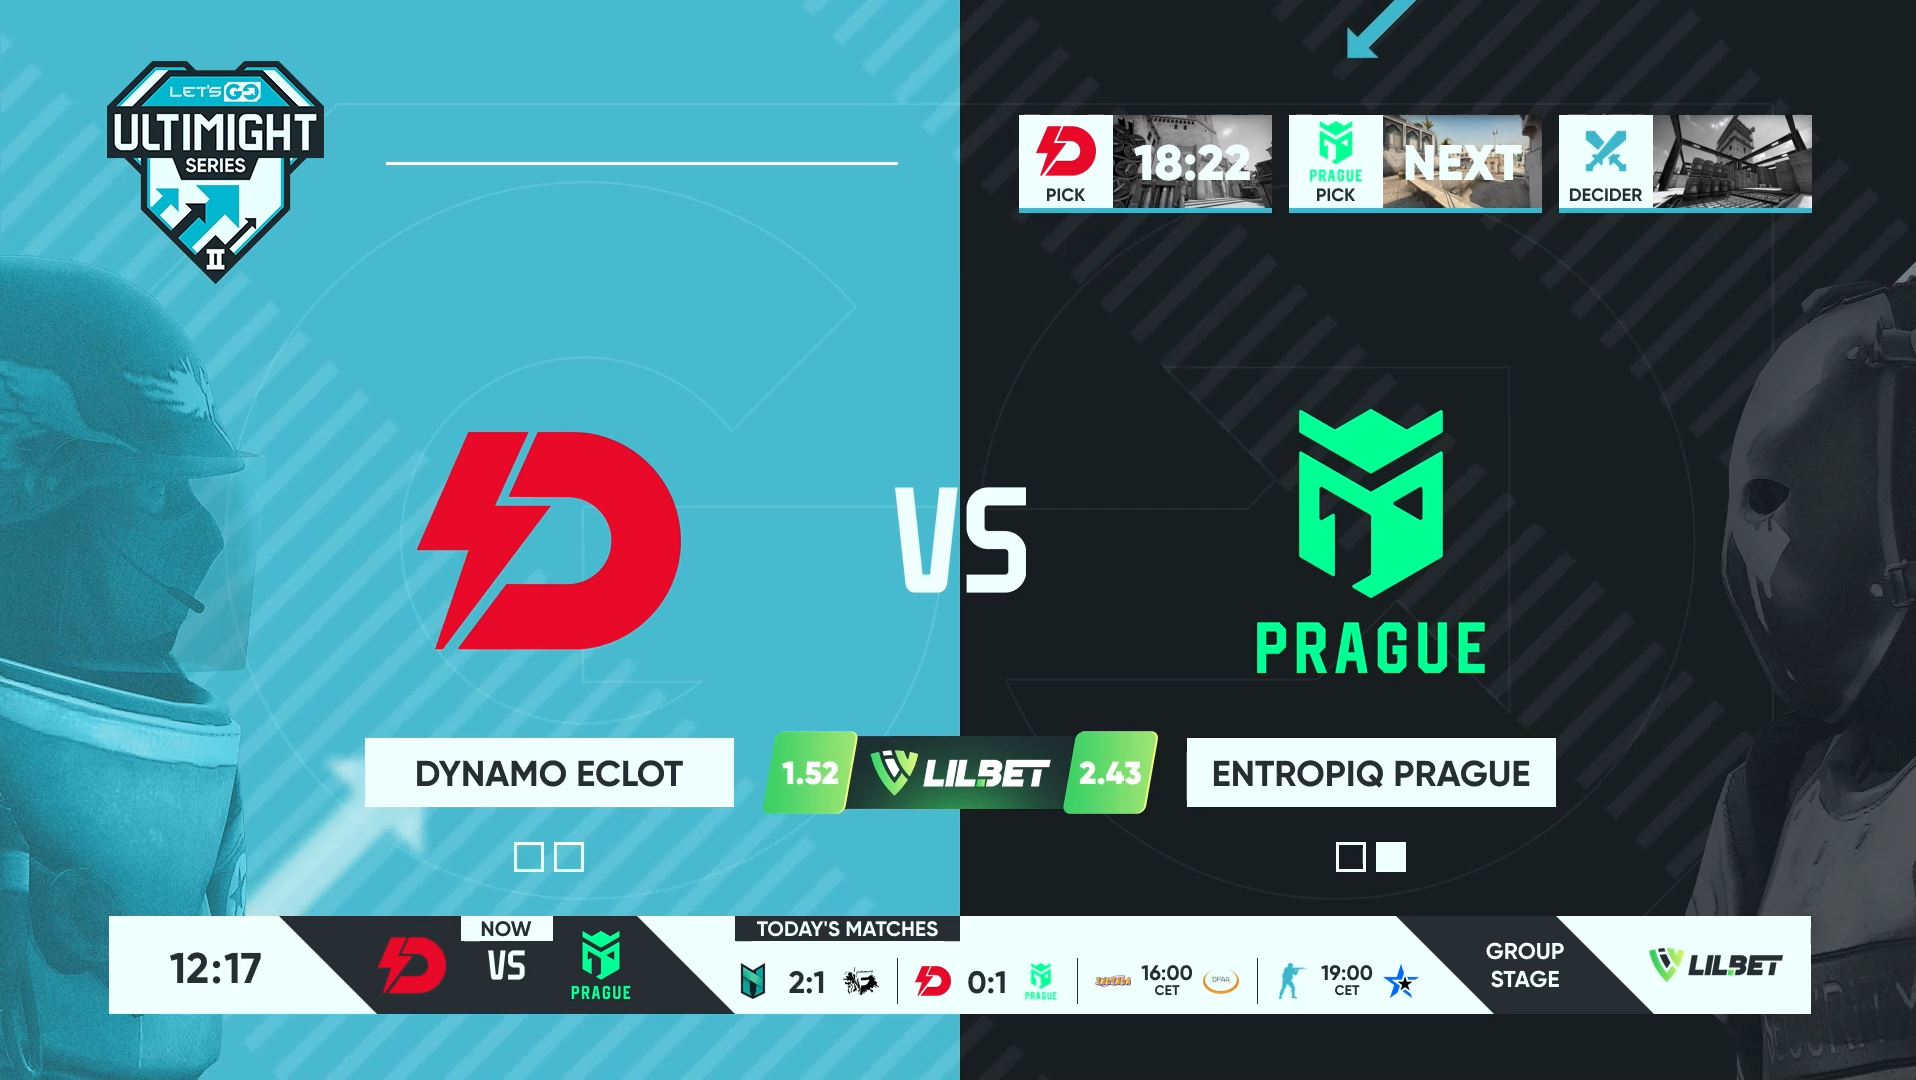 Entropiq Prague uspěli proti Dynamo Eclot v mezinárodním turnaji s prizepoolem $10,000